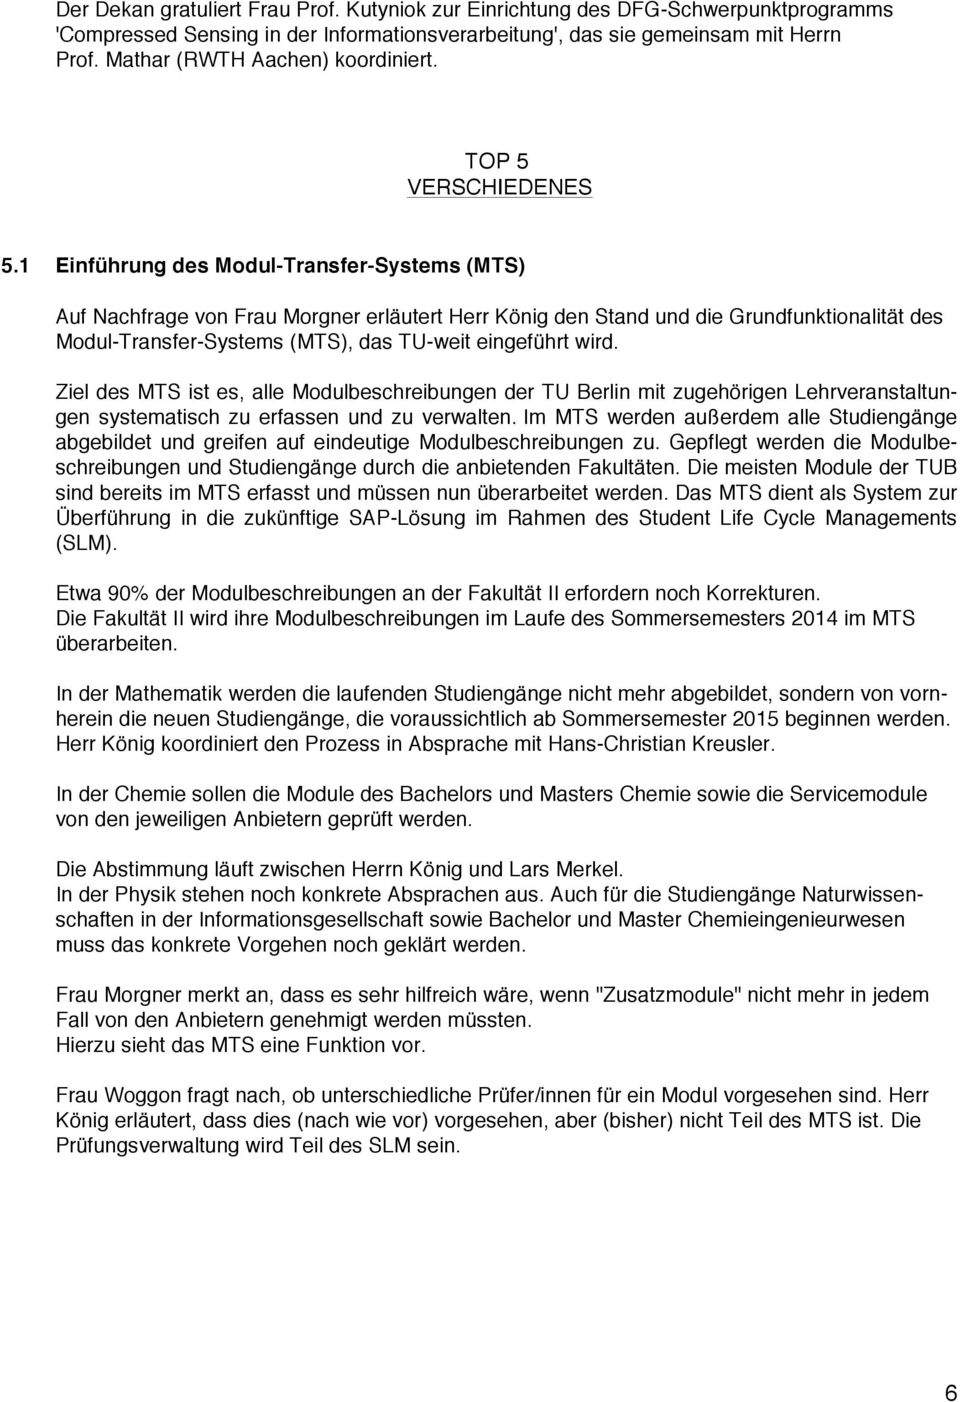 1 Einführung des Modul-Transfer-Systems (MTS) Auf Nachfrage von Frau Morgner erläutert Herr König den Stand und die Grundfunktionalität des Modul-Transfer-Systems (MTS), das TU-weit eingeführt wird.